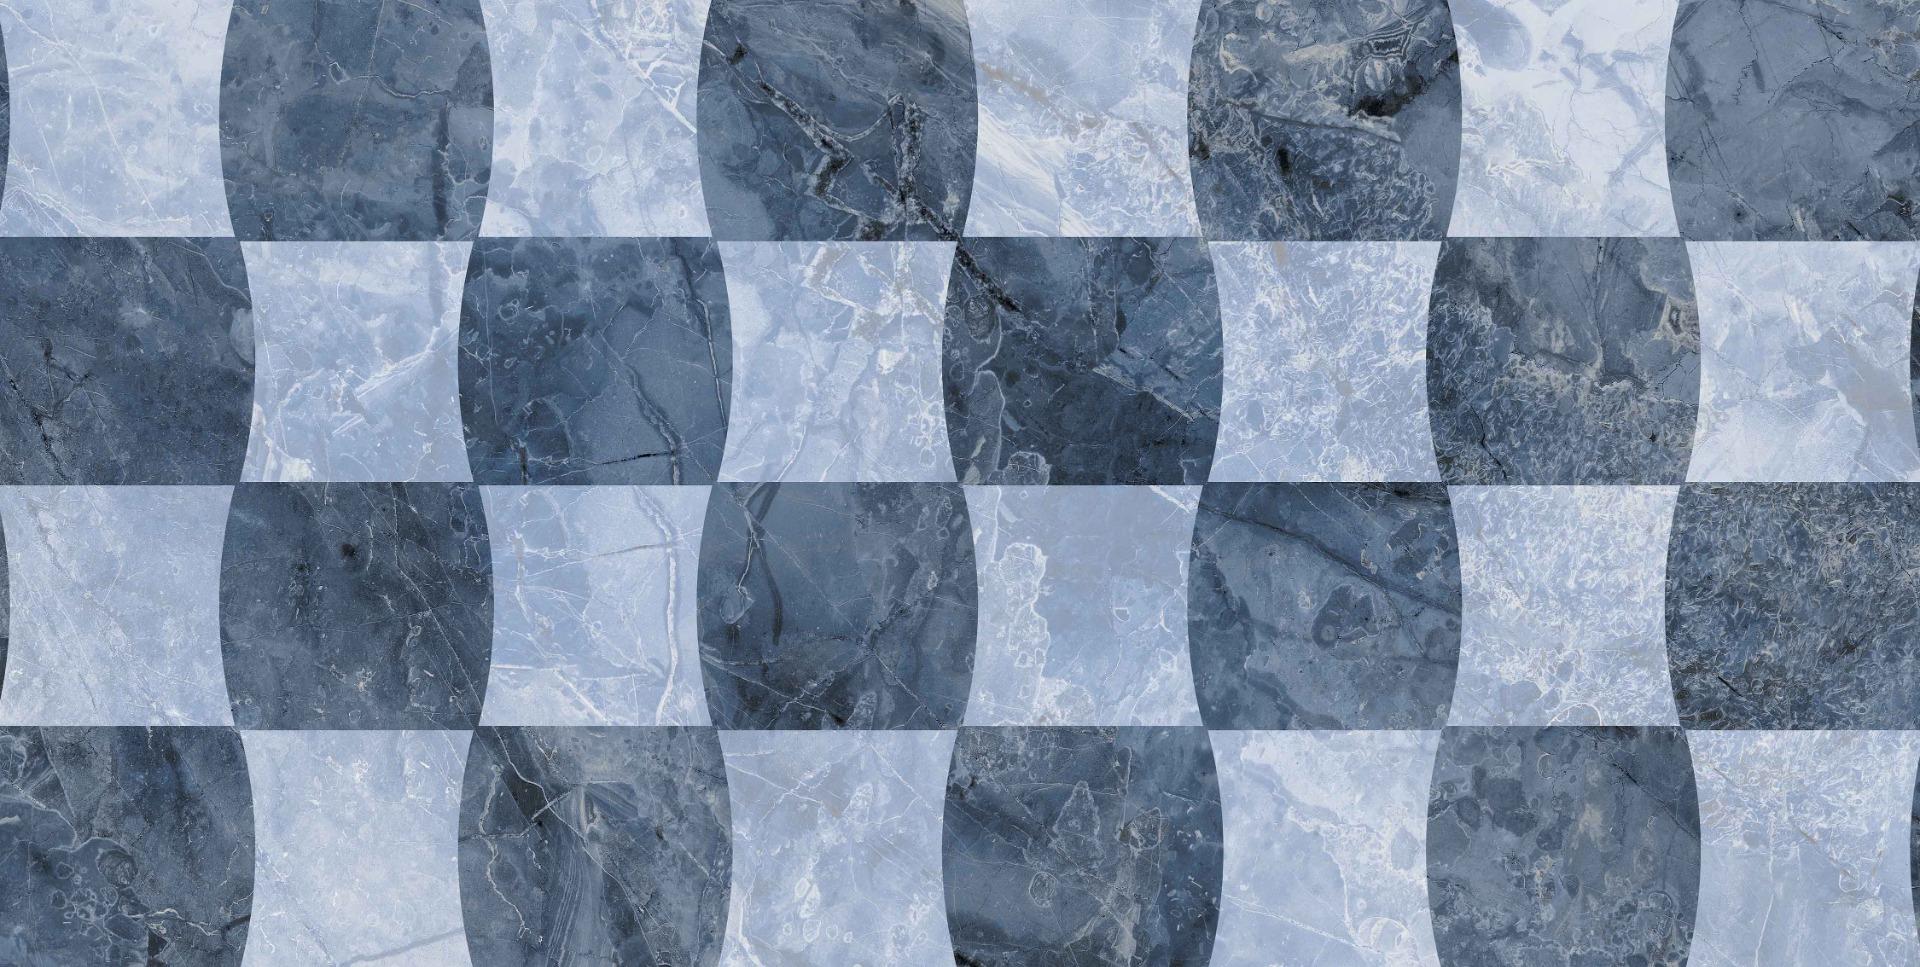 Blue Marble Tiles for Bathroom Tiles, Living Room Tiles, Kitchen Tiles, Bedroom Tiles, Accent Tiles, Hospital Tiles, High Traffic Tiles, Bar/Restaurant, Commercial/Office, School & Collages